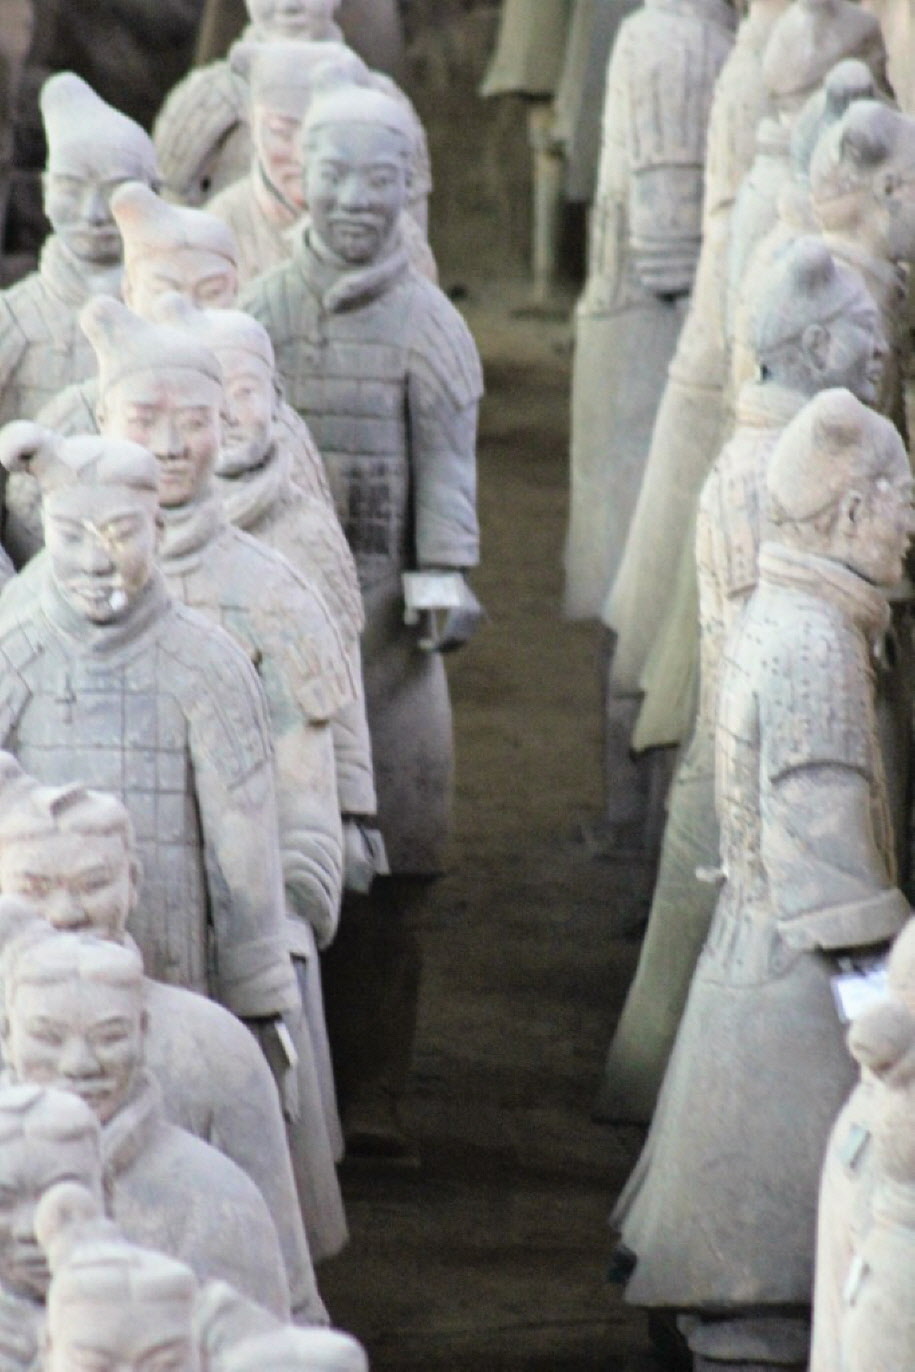 Die Terrakottaarmee - Da die Qin-Soldaten private Kleidung trugen, gab es keine einheitlichen Uniformen. Die dargestellte Kleidung an den Figuren gibt daher gute Aufschlüsse über die allgemeinen Kleidungsgewohnheiten der Qin-Gesellschaft. Die Soldatenfigu